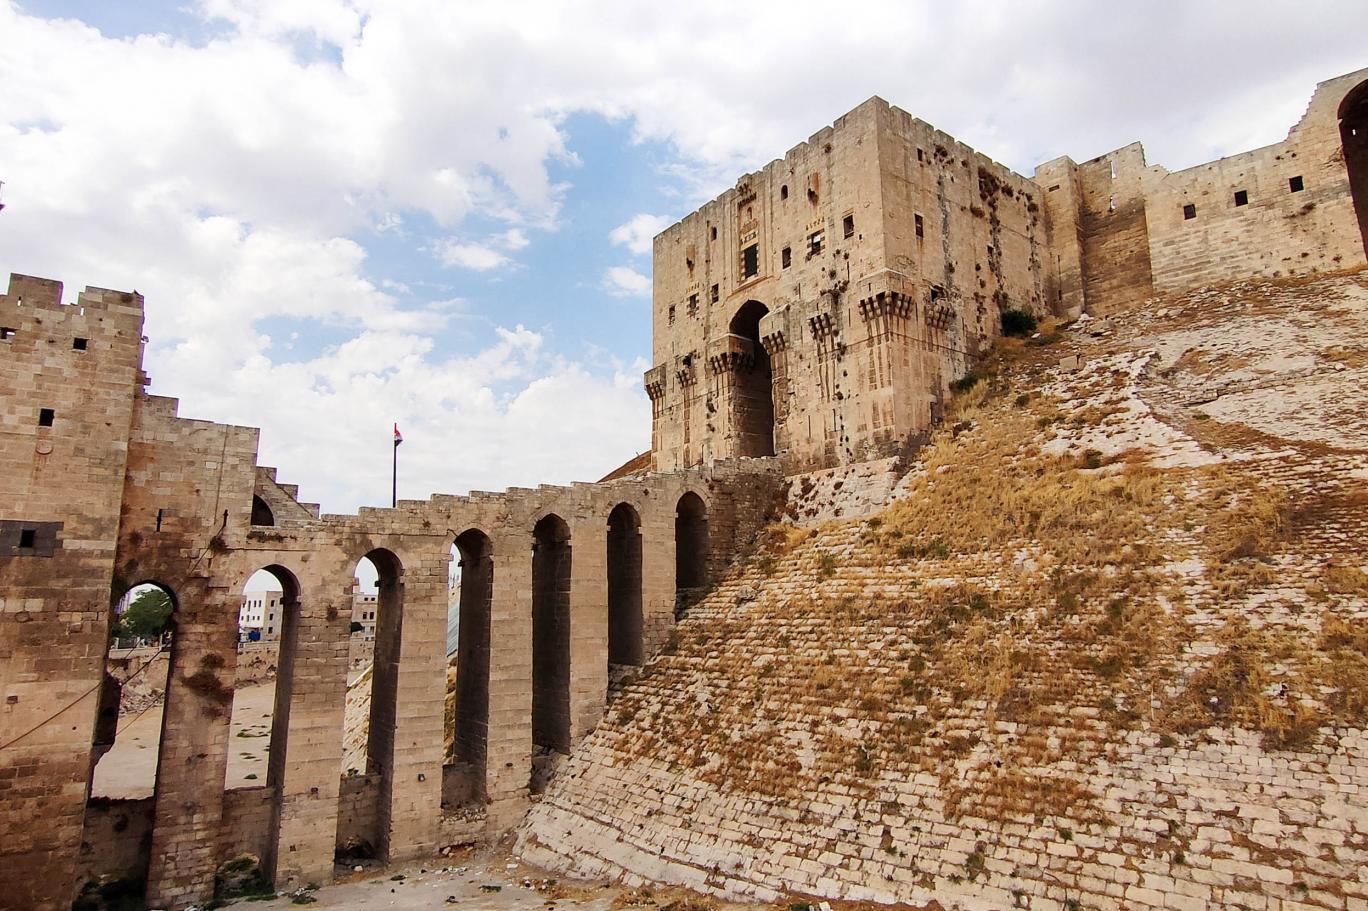 وزارة الثقافة: قلعة حلب بدأت اليوم باستقبال زوارها بعد ترميم مدخلها الرئيسي